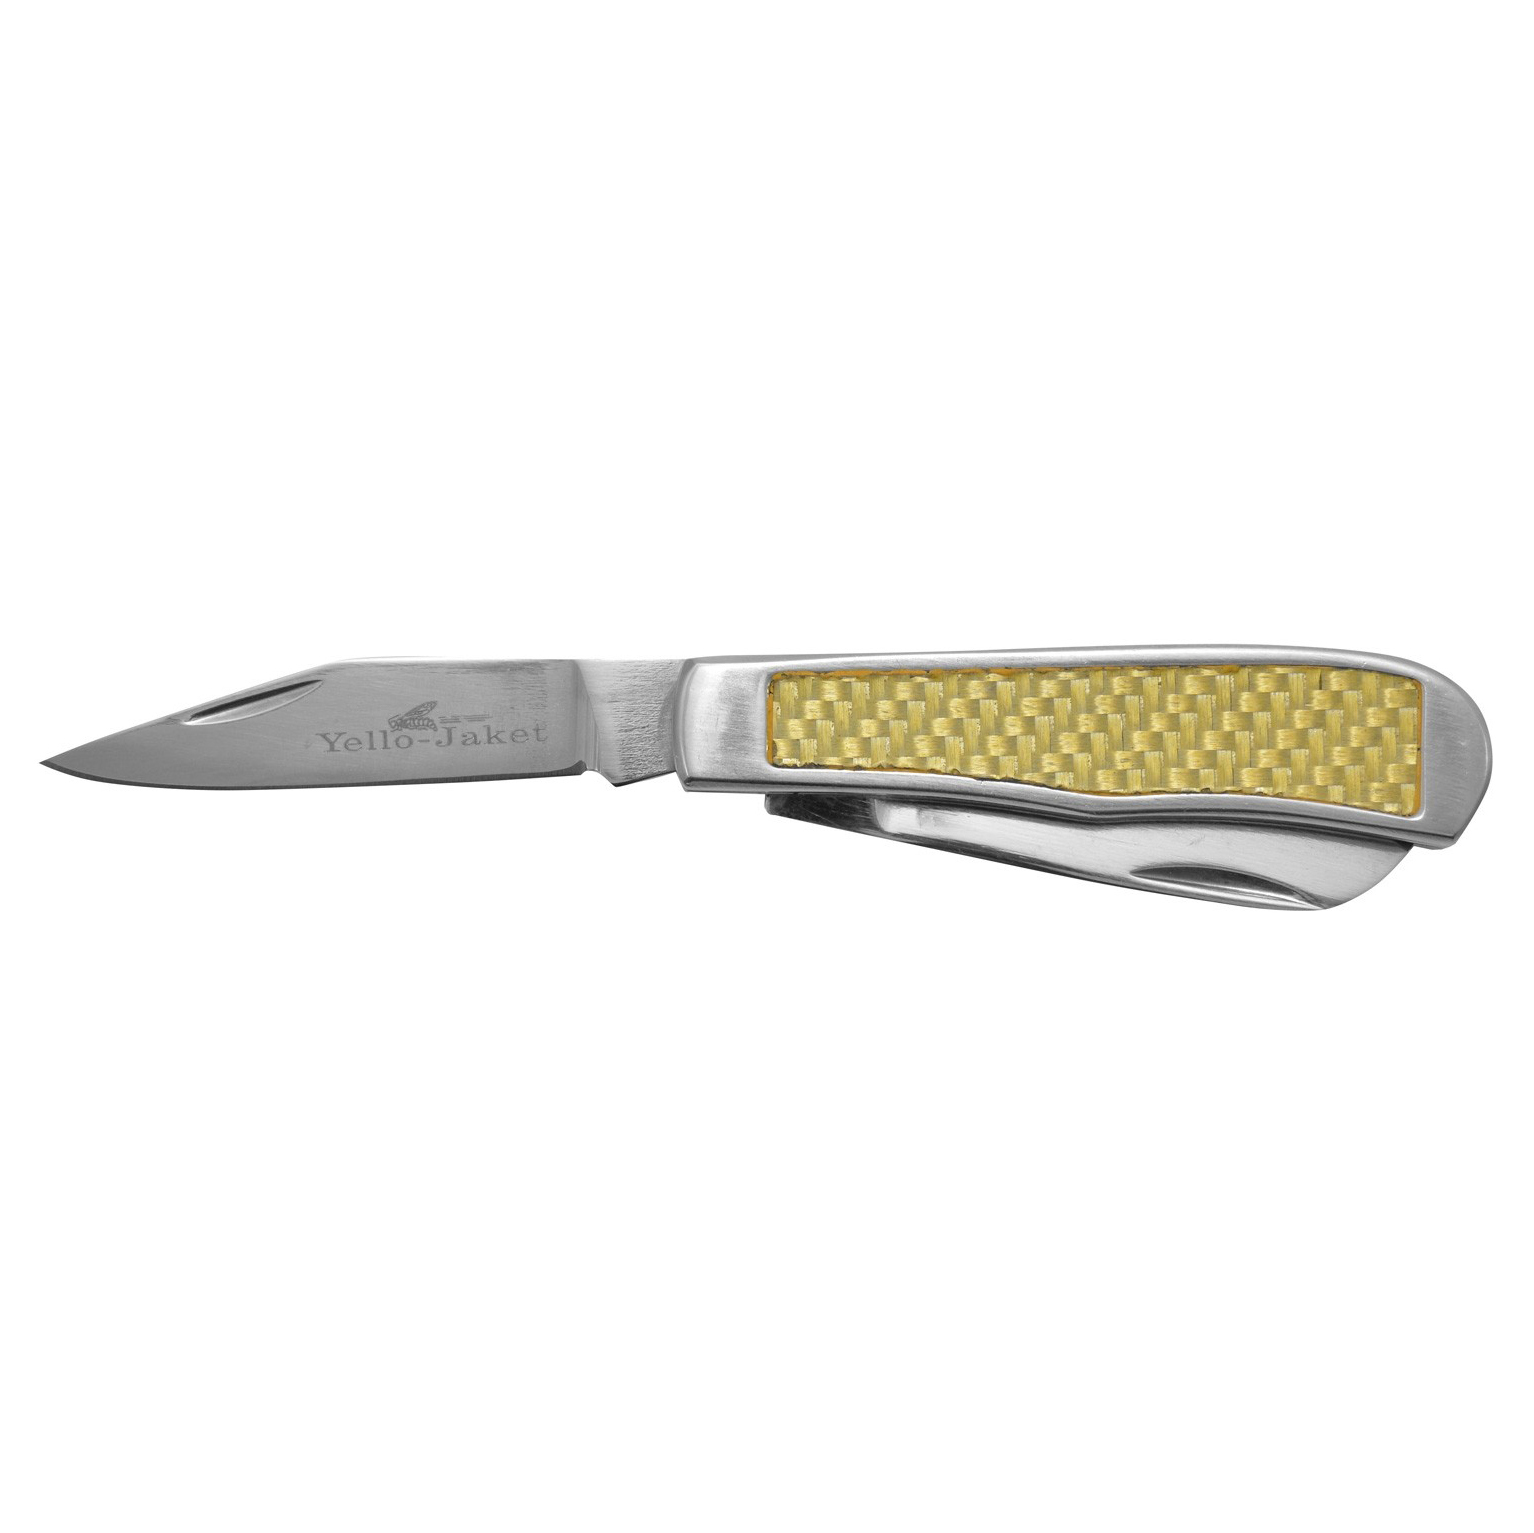 Нож складной Camillus Yello-Jaket 2-Blade Trapper, сталь AUS-8, рукоять Carbon Fiber, сталь от Ножиков